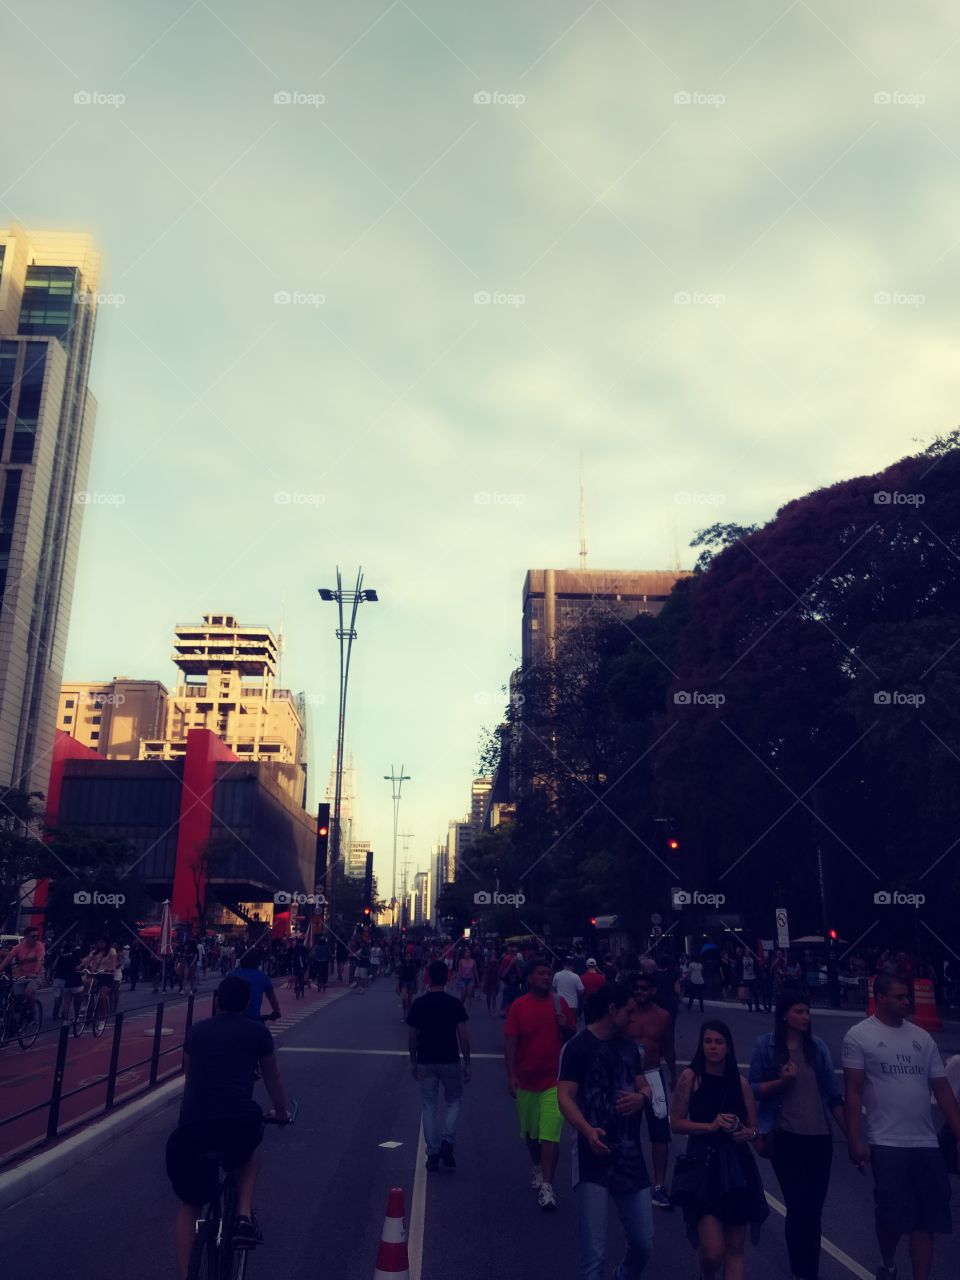 paulista Avenue